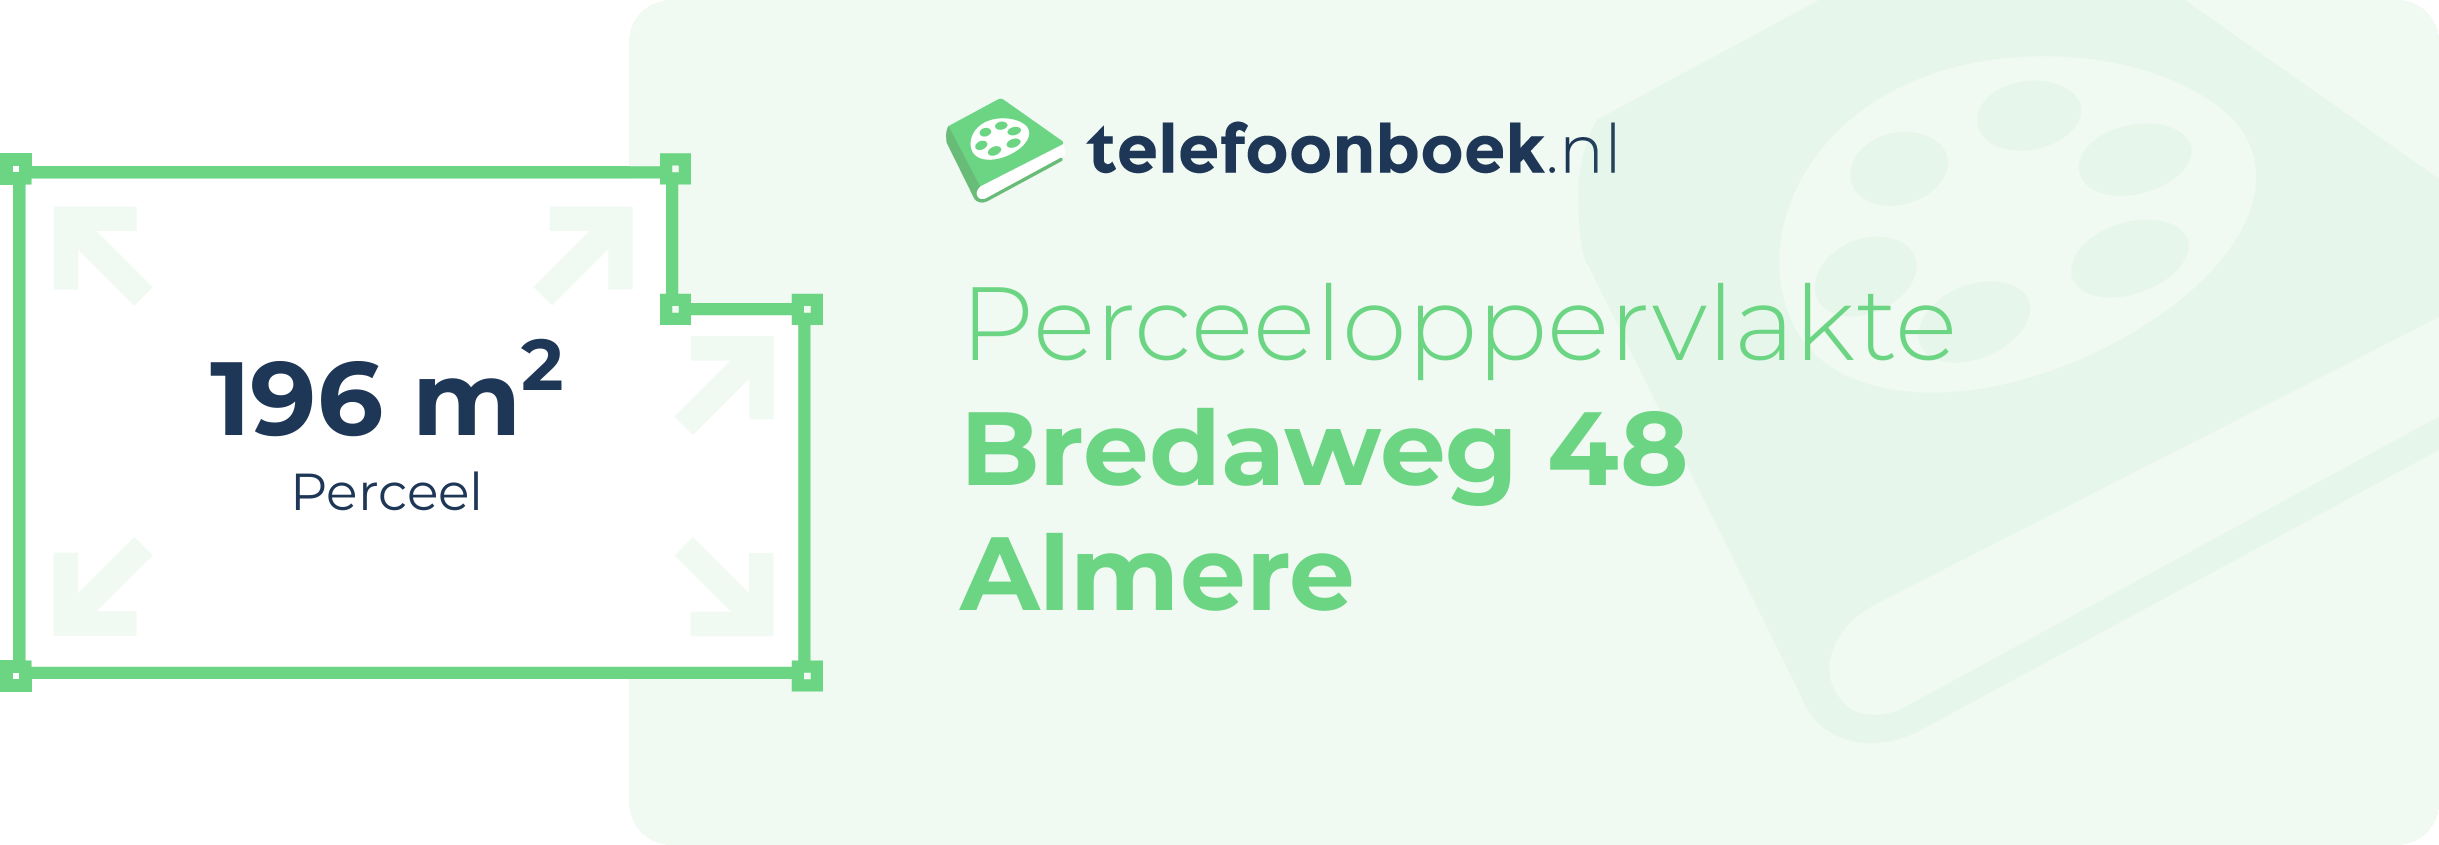 Perceeloppervlakte Bredaweg 48 Almere